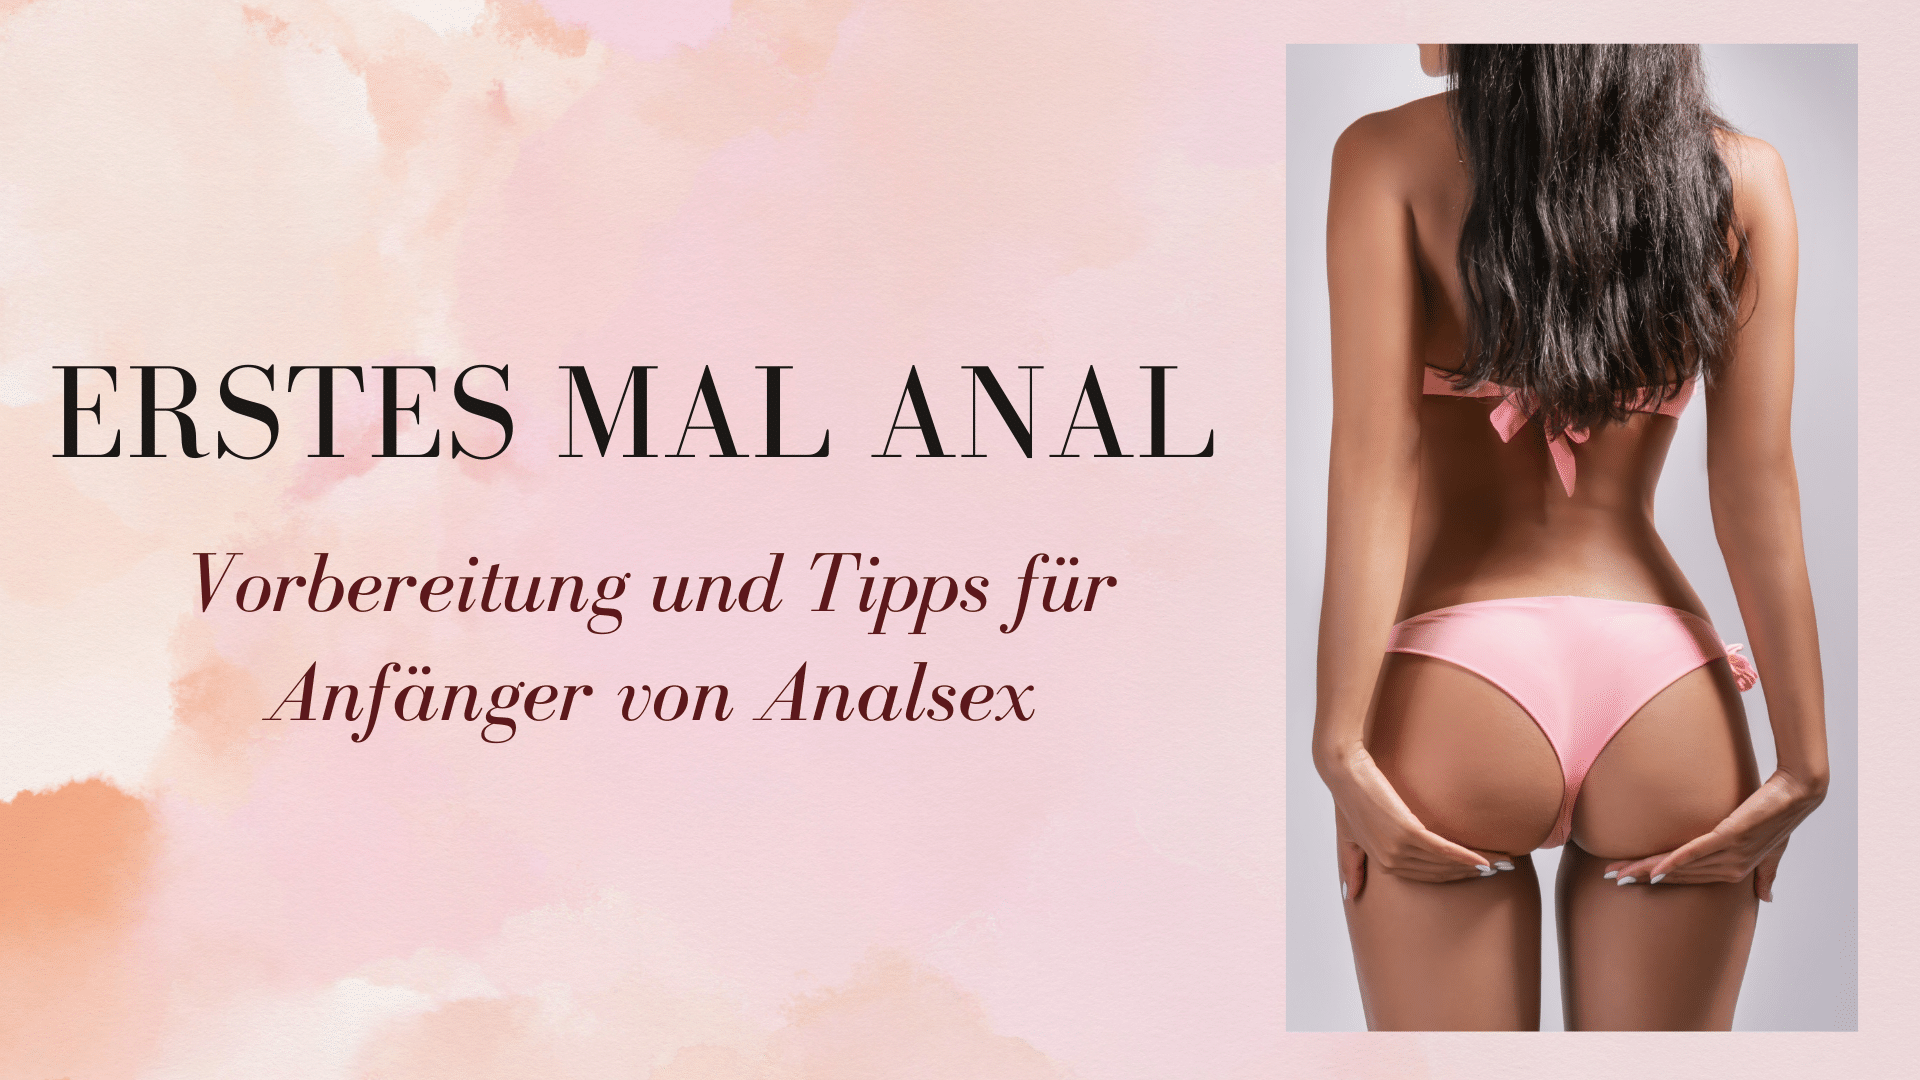 Erstes Mal anal: Vorbereitung und Tipps für Anfänger von Analsex